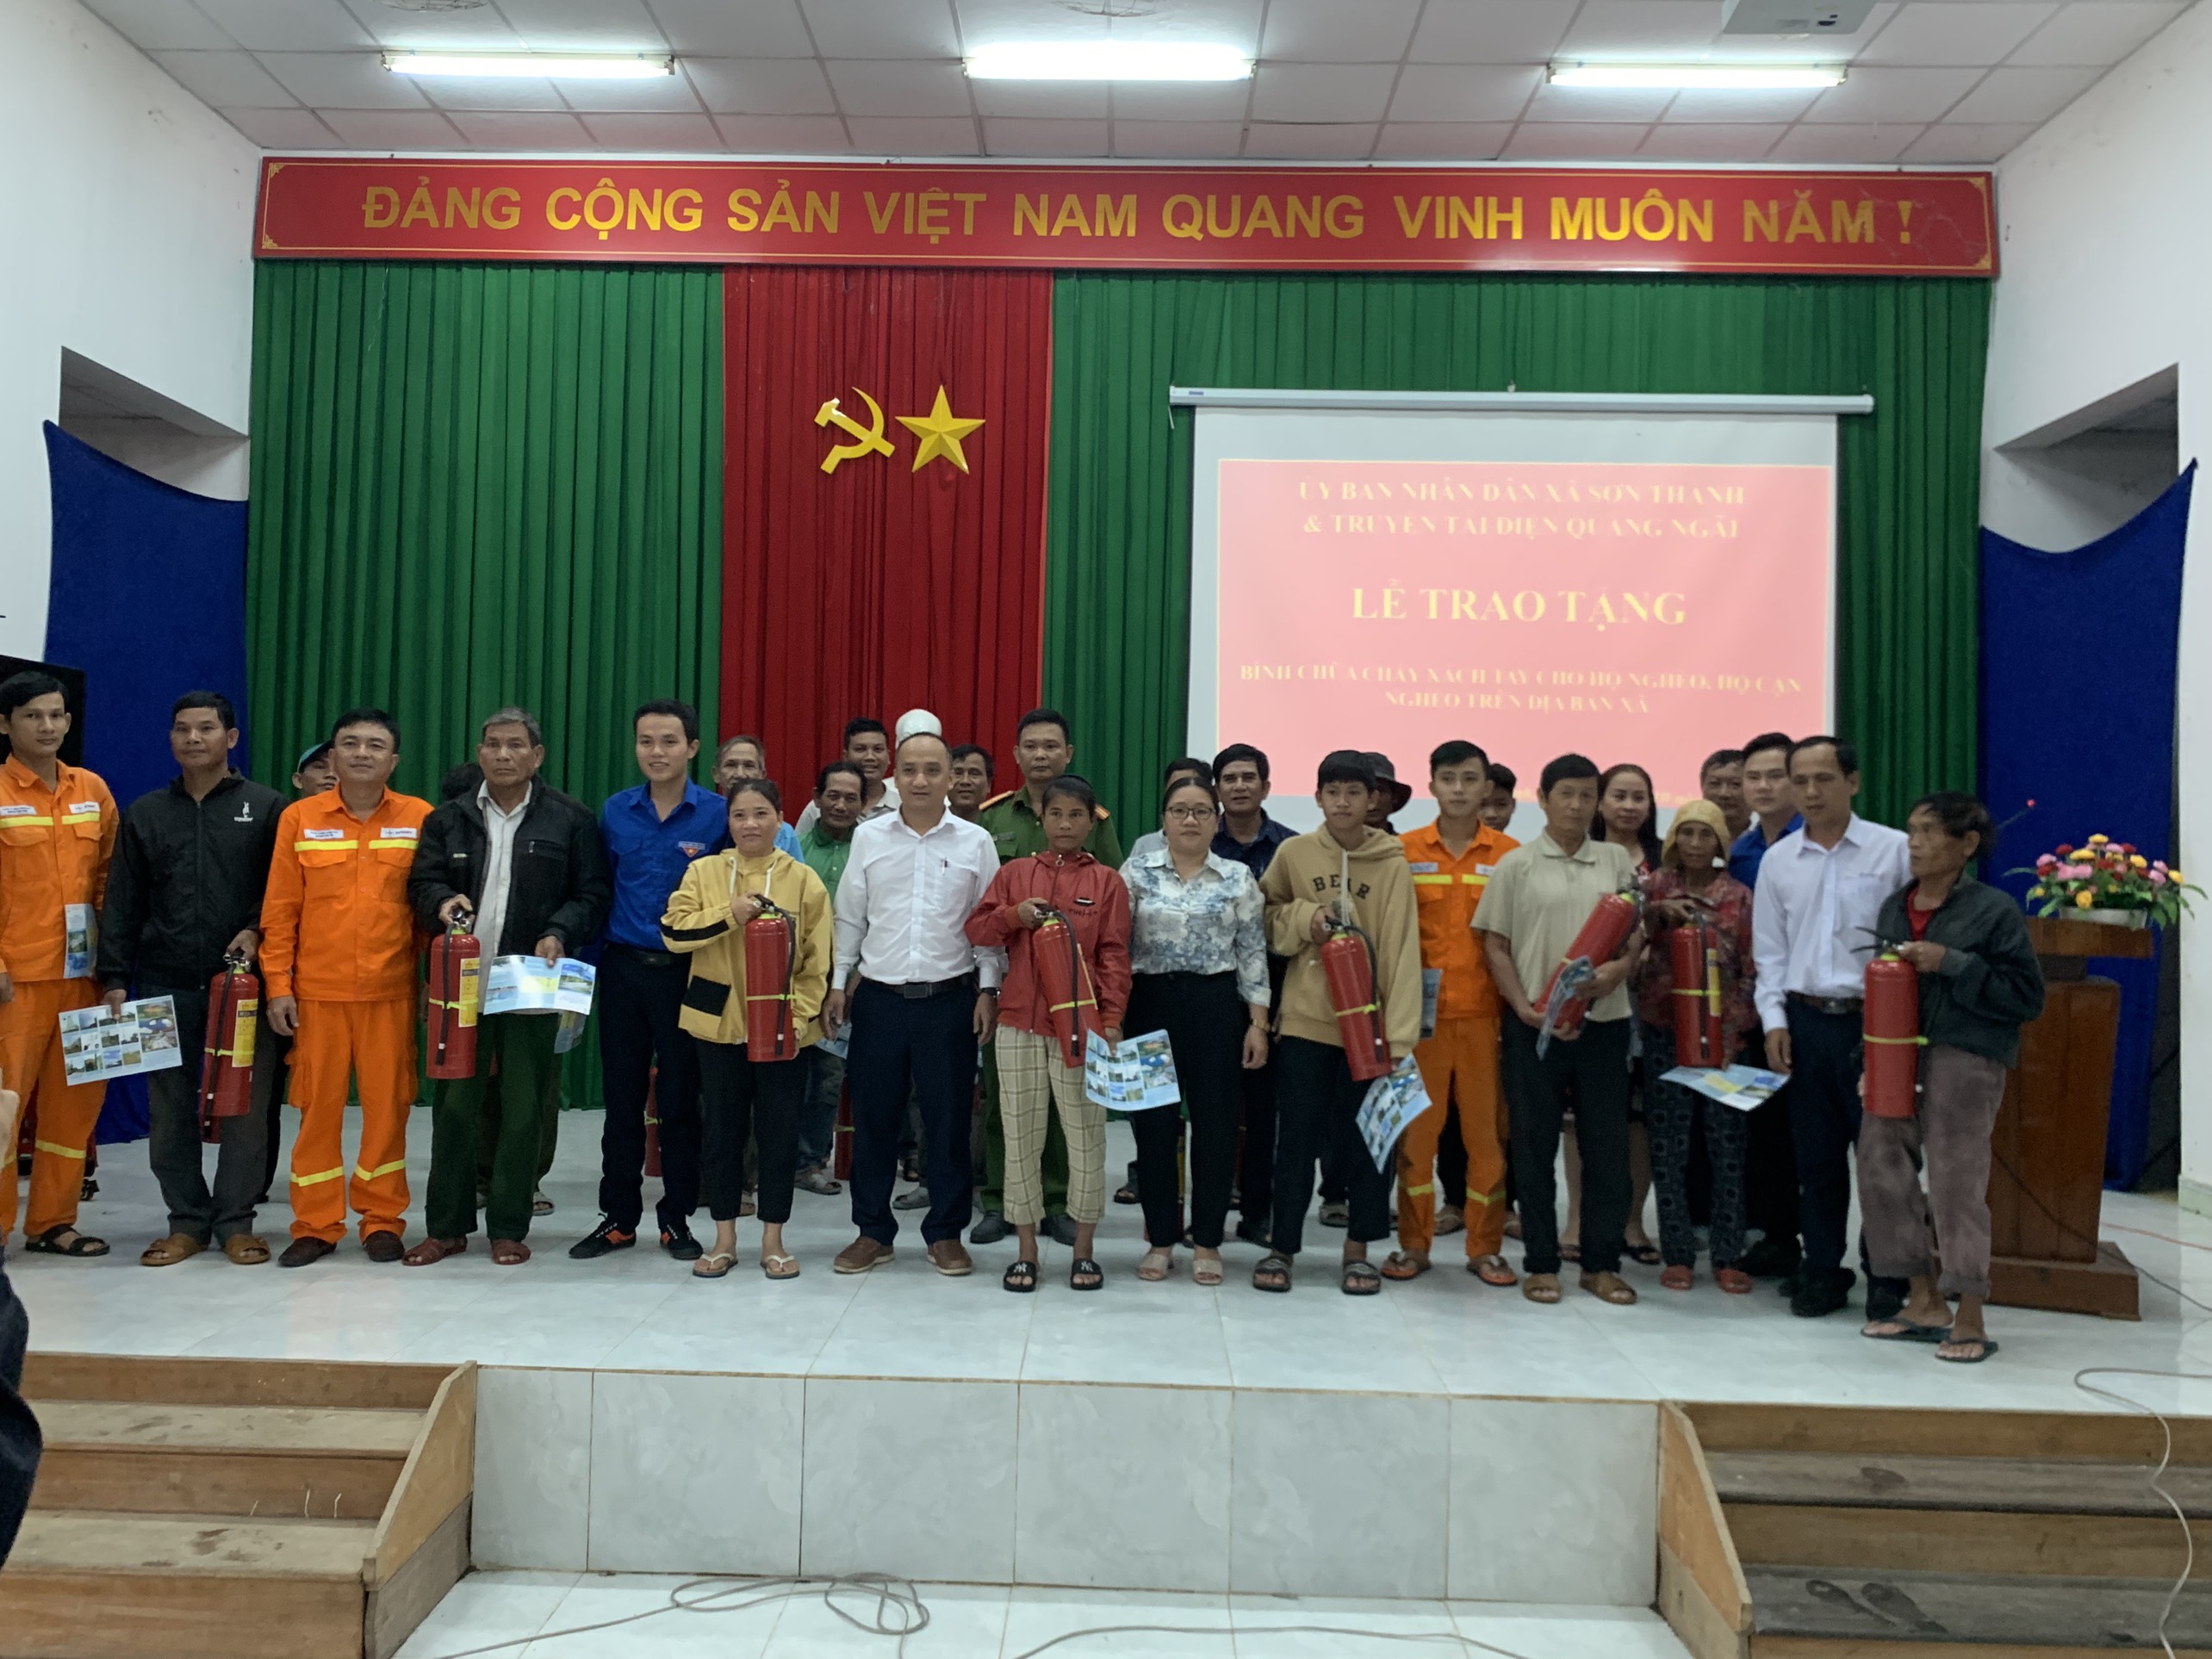 UBND xã phối hợp Truyền tải điện Quảng Ngãi cấp cho cấp cho 20 hộ gia đình bình chữa cháy xách tay cho hộ nghèo, hộ cận nghèo trên địa bàn xã